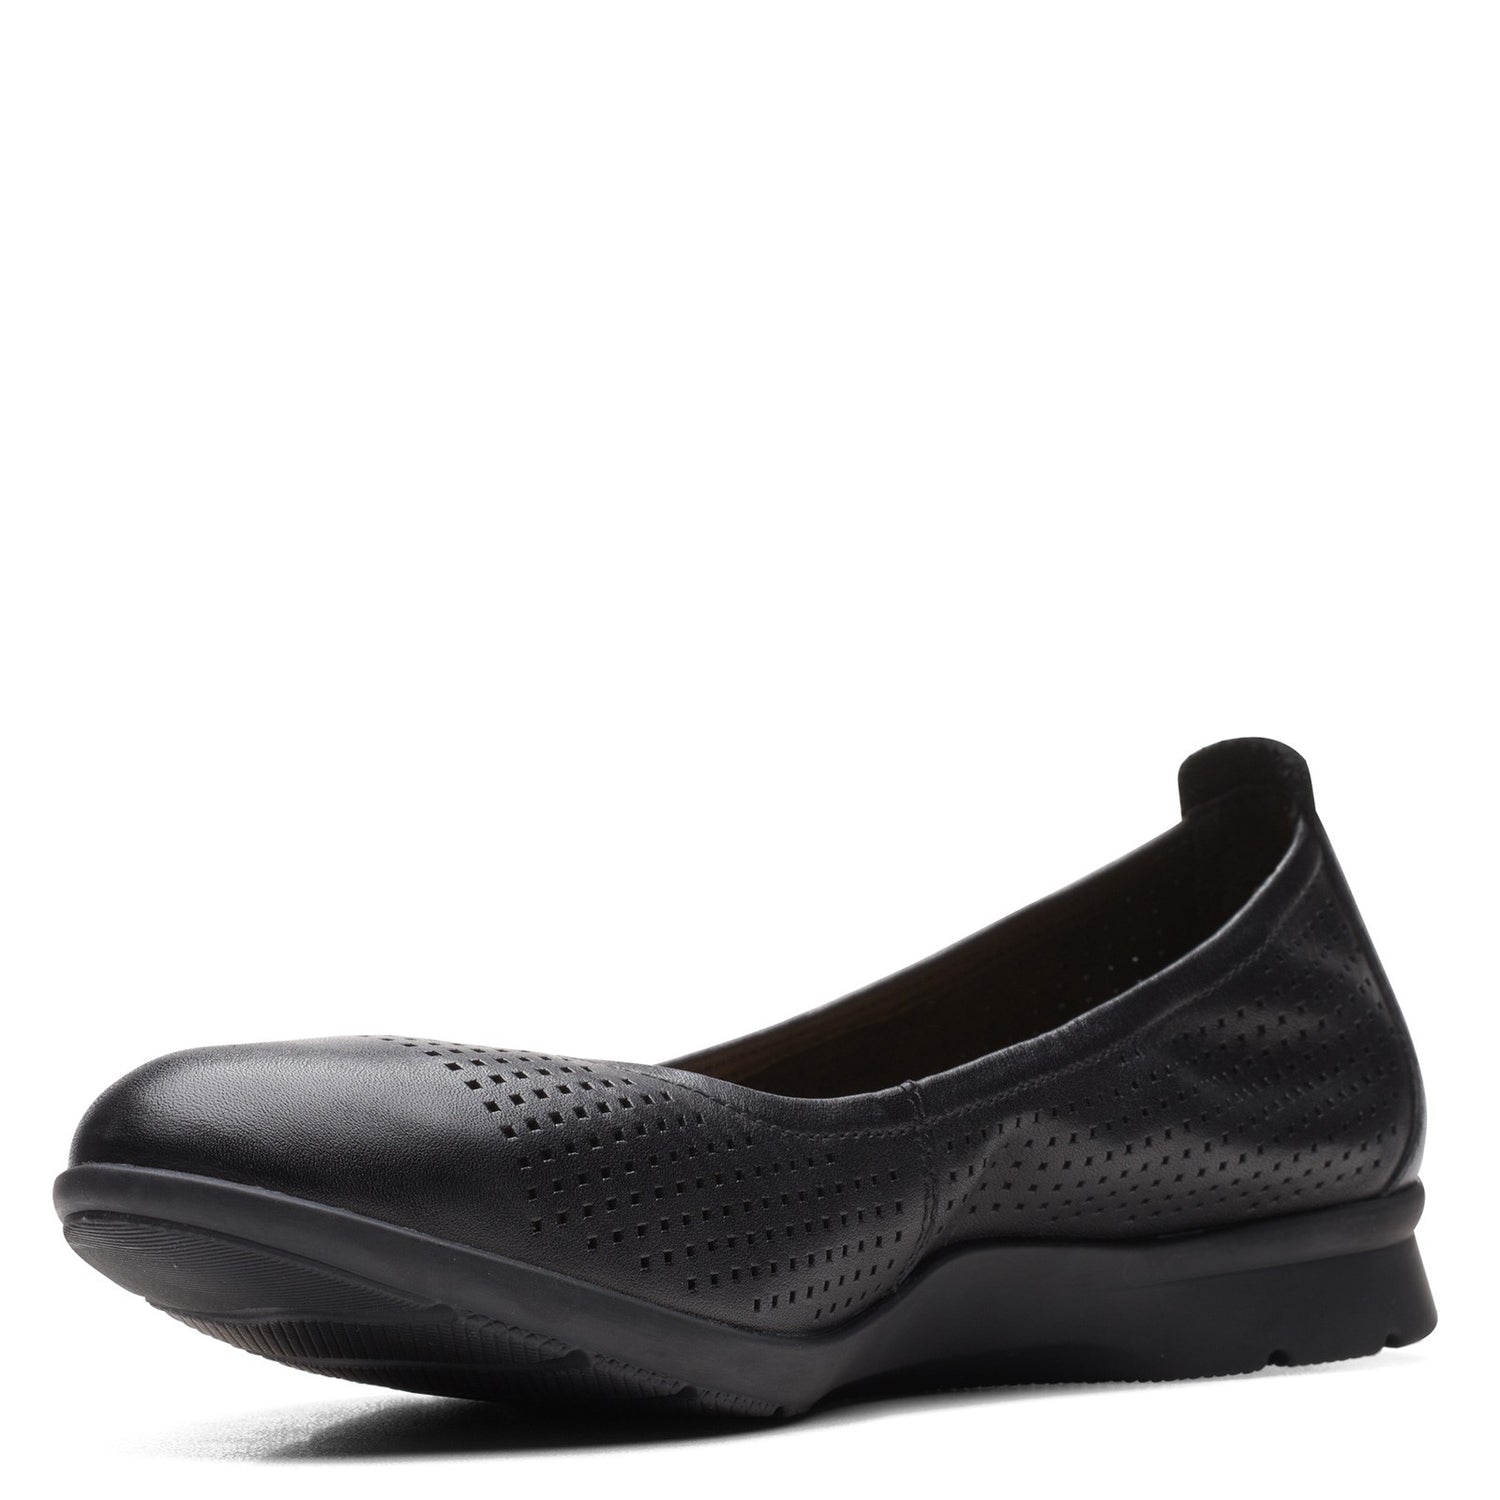 Peltz Shoes  Women's Clarks Jenette Ease Flat Black Leather 26165152